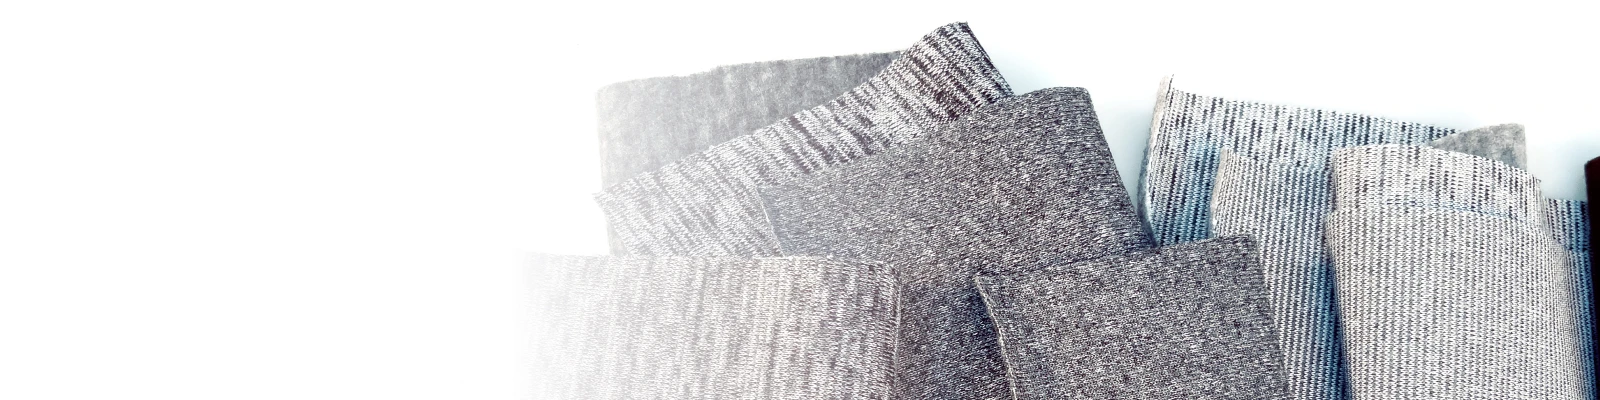 ผ้าสเวตเตอร์ฟลีซ | ผ้าสเวตเตอร์ขูดขน เนื้อนุ่มพิเศษ เรียบหรู อุ่นสบาย | ผ้าโพลีเอสเตอร์รักษ์โลก